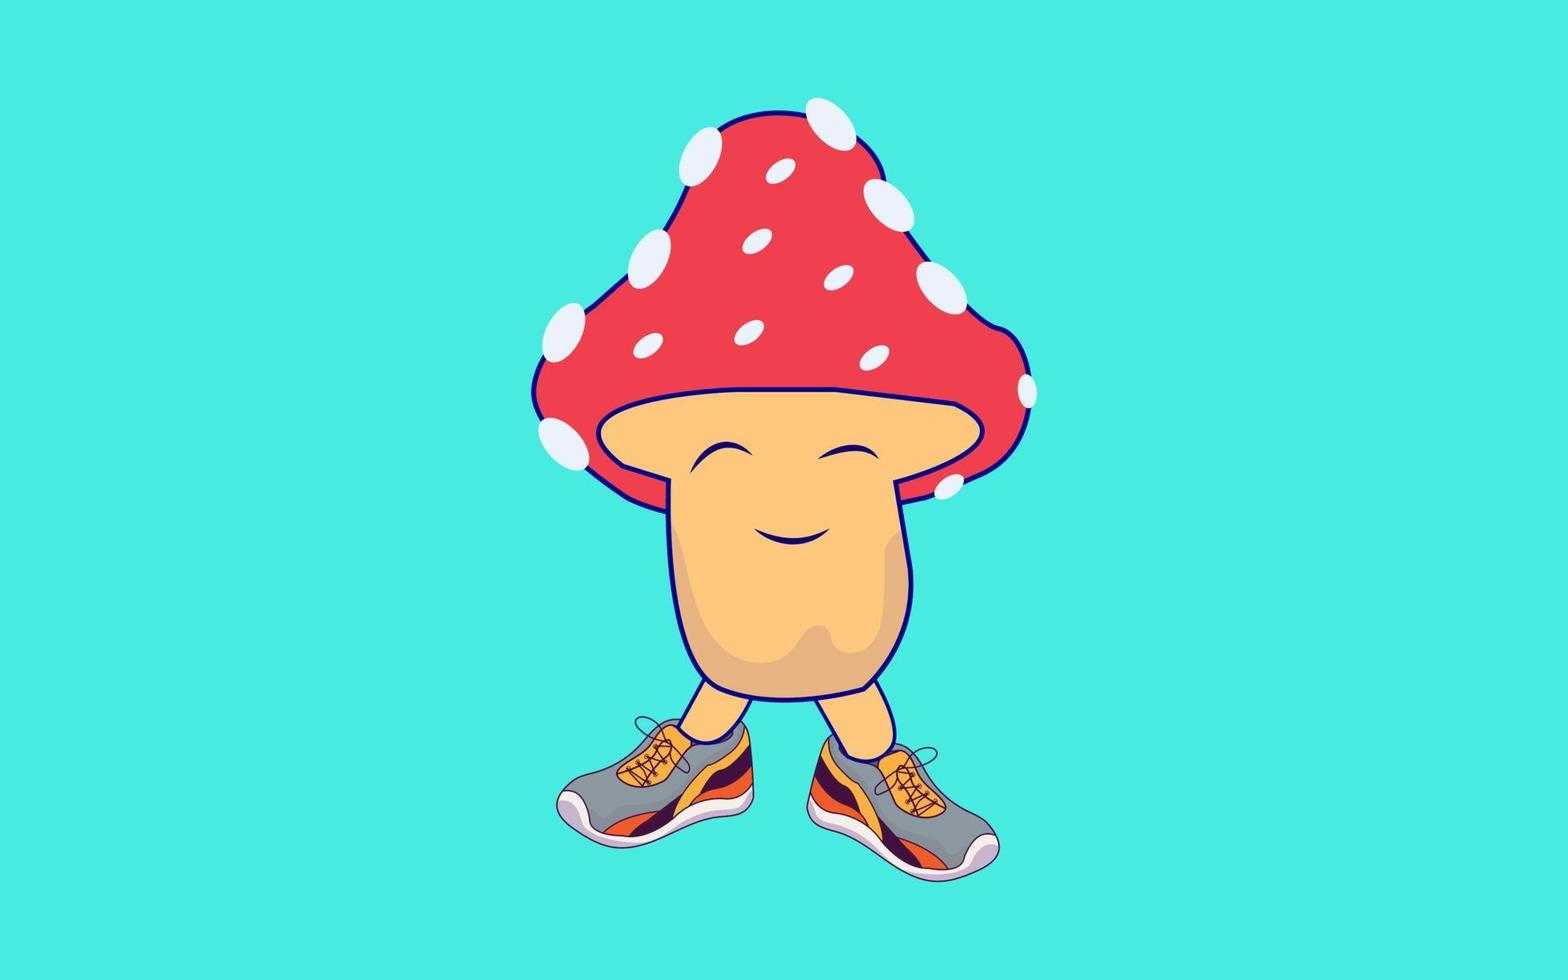 Mushroom vegetable cartoon vector